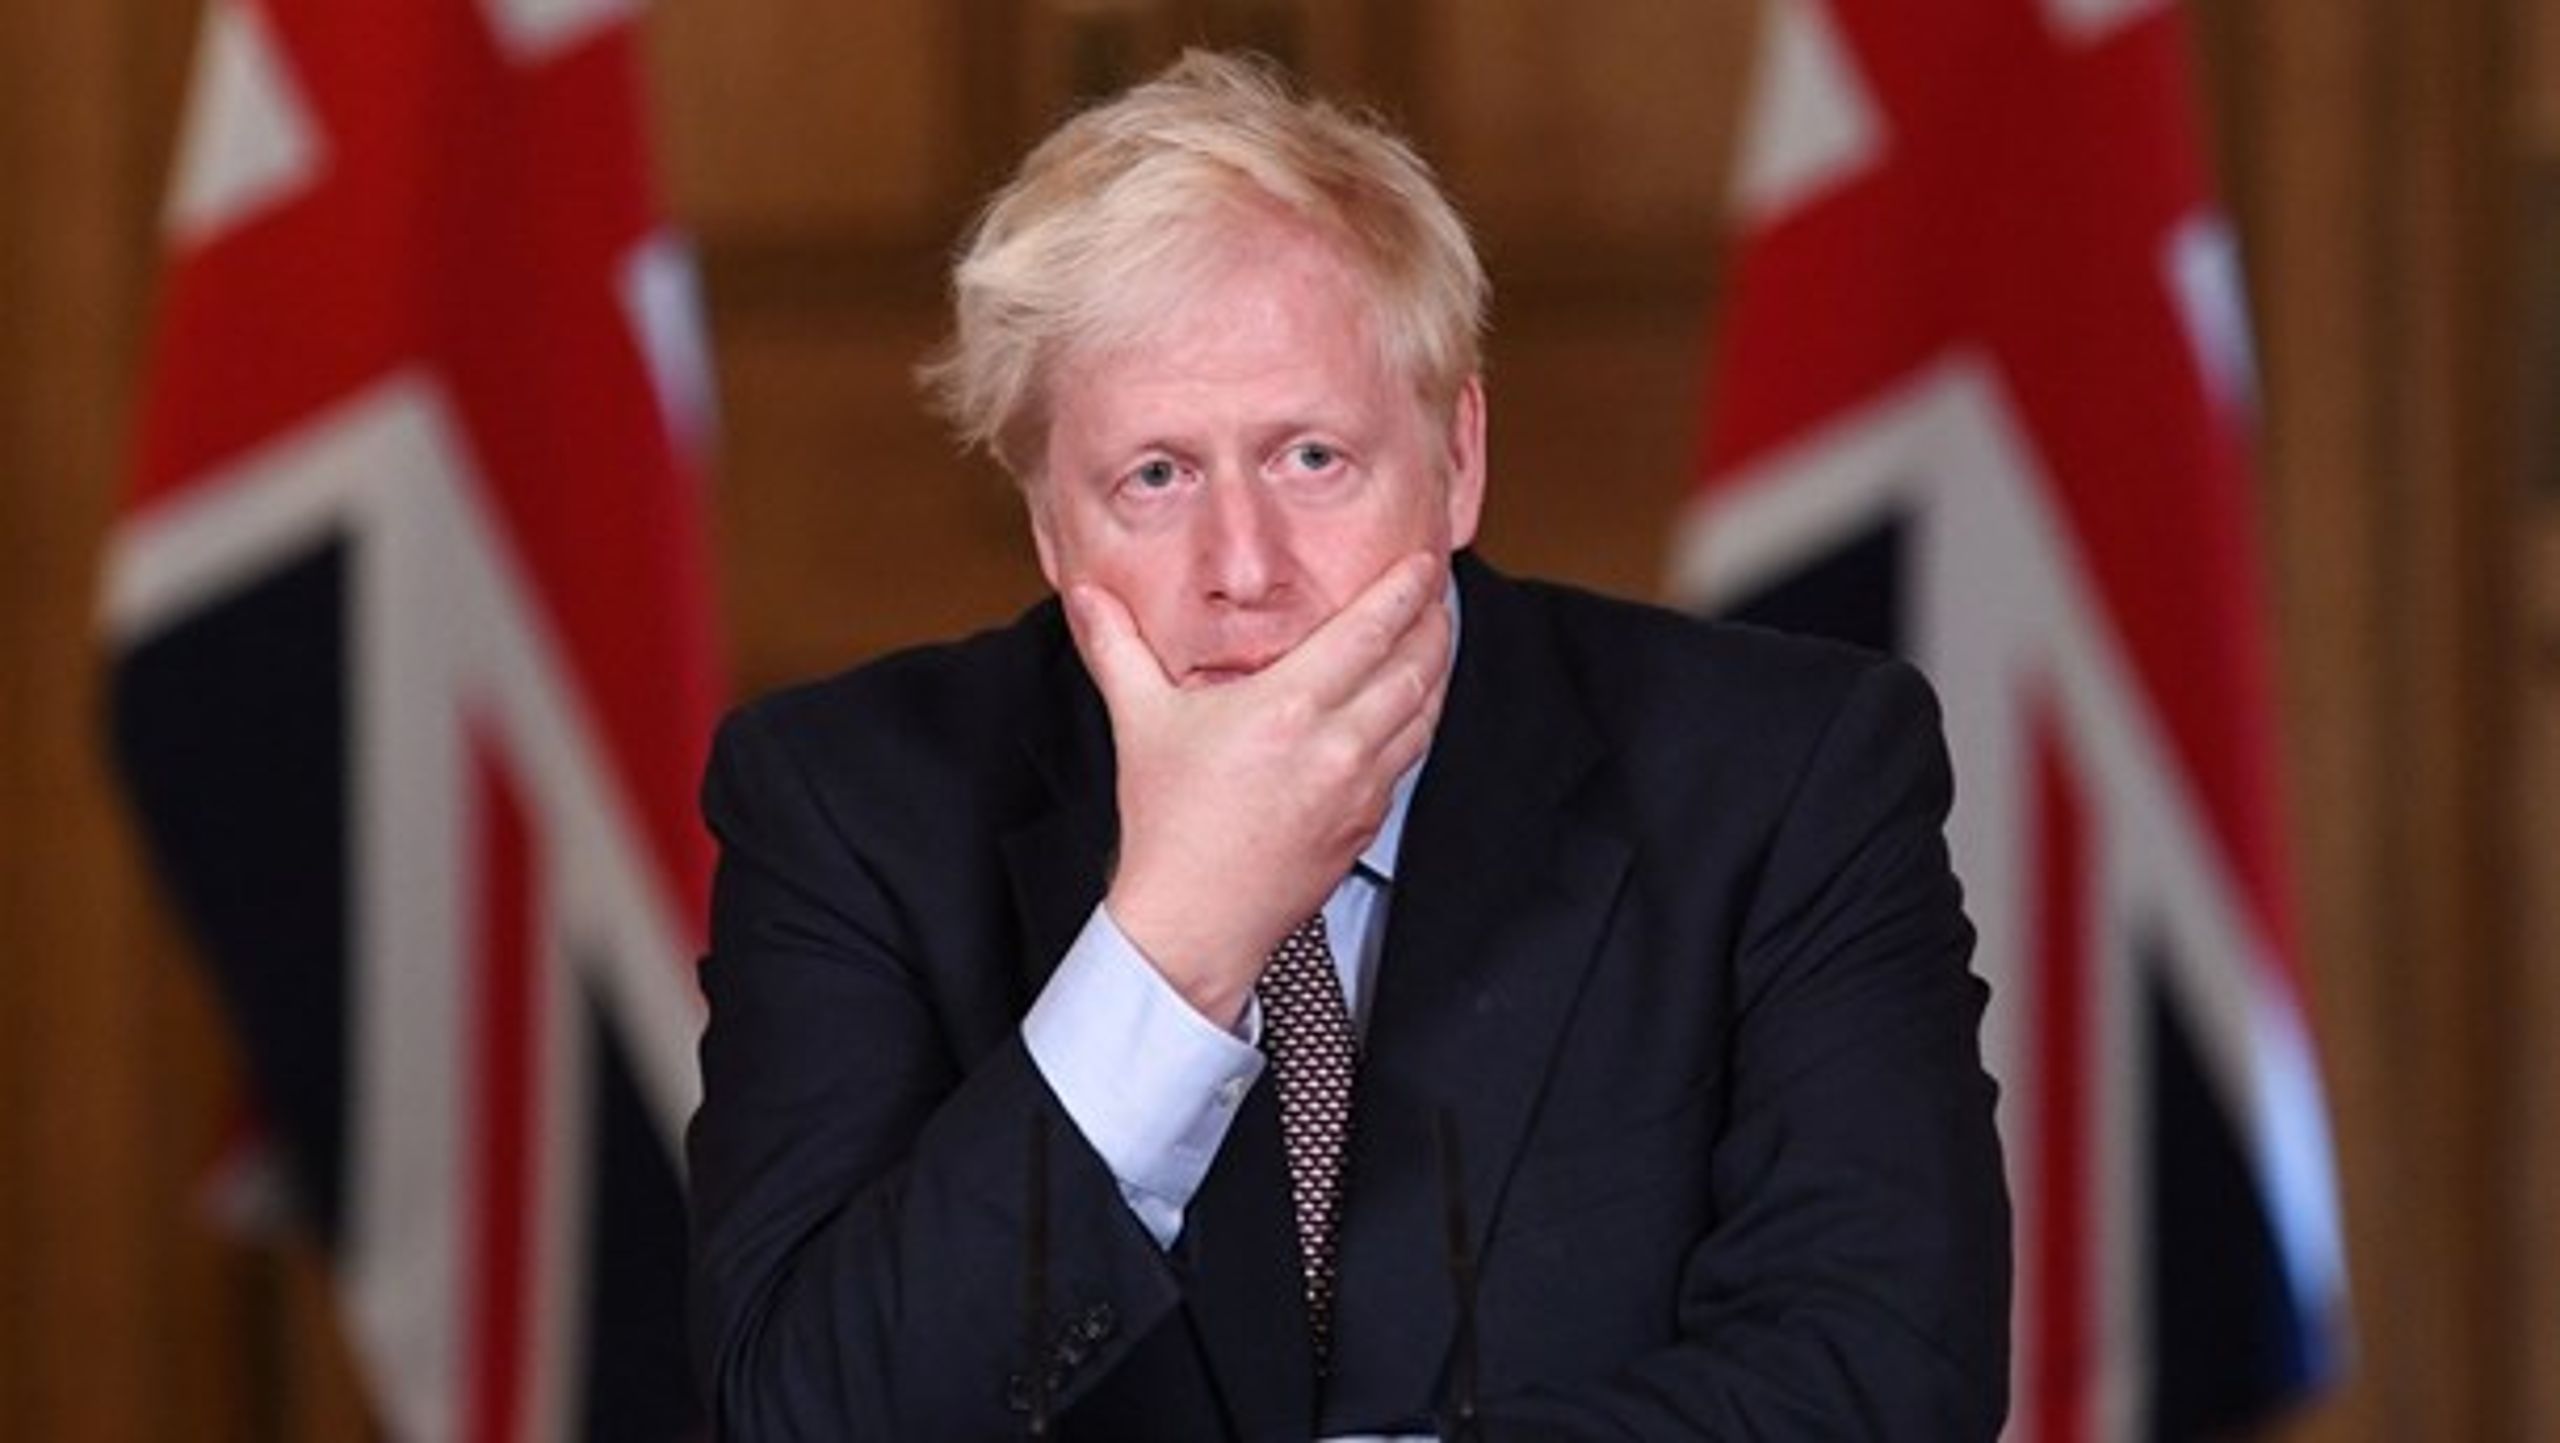 Premierminister Johnson ryster EU ved at udfordre Brexit-aftalen i 11. time.